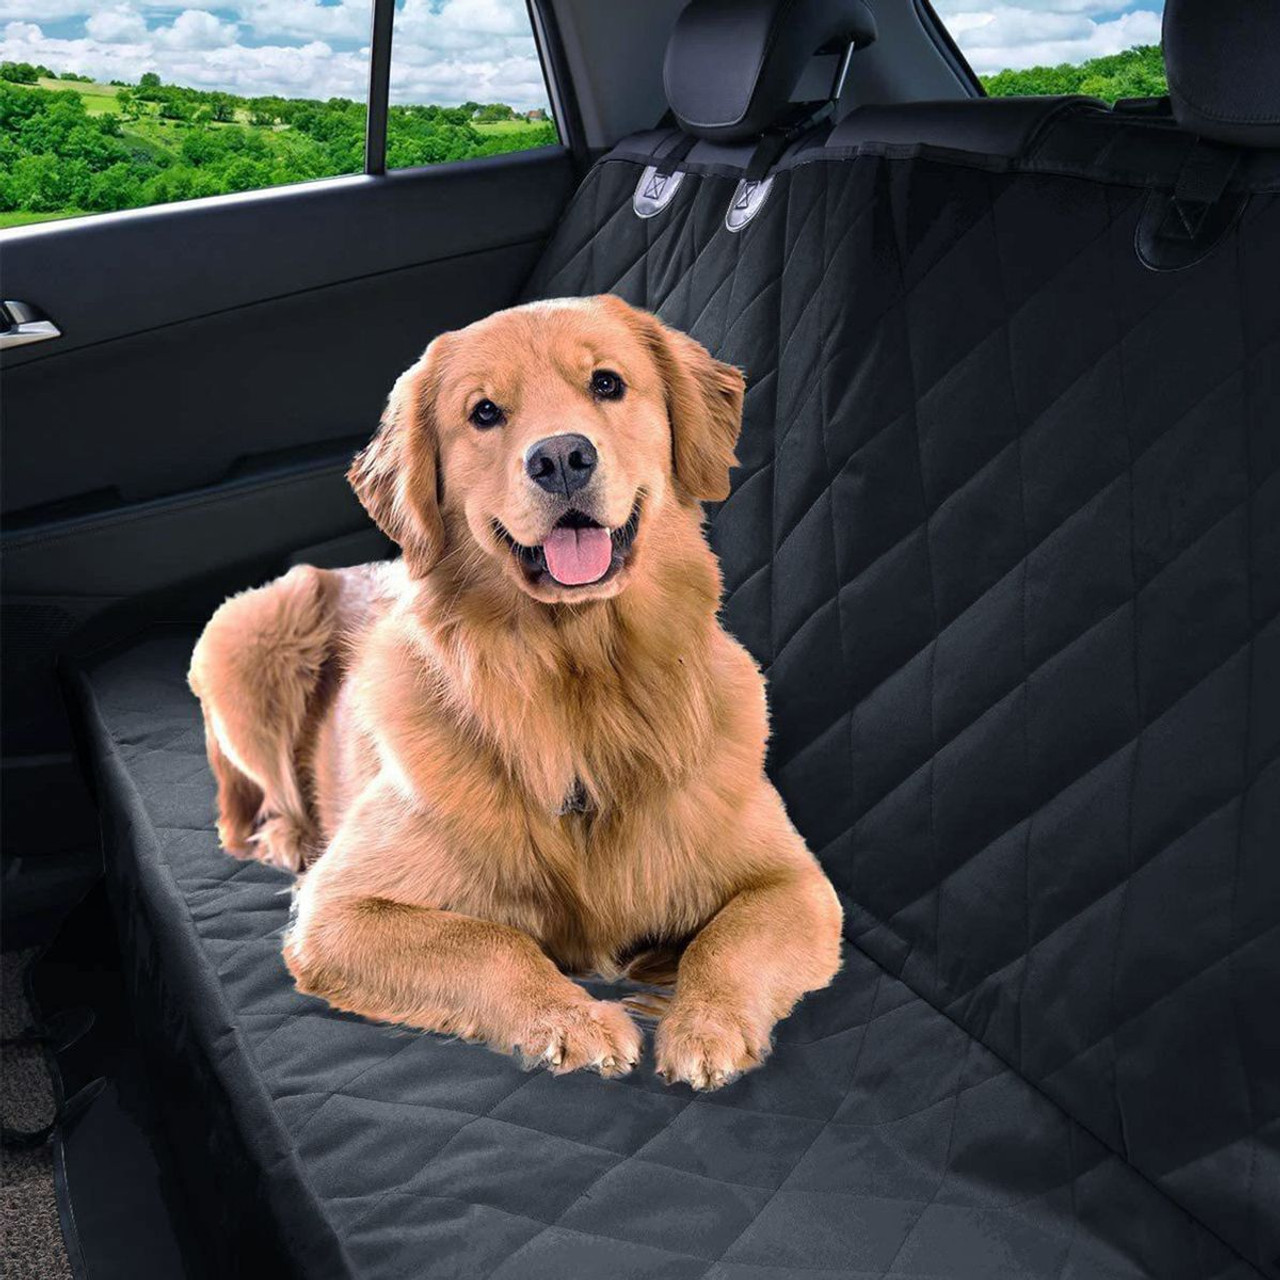 iMounTEK® Pet Car Rear Protector Mat product image